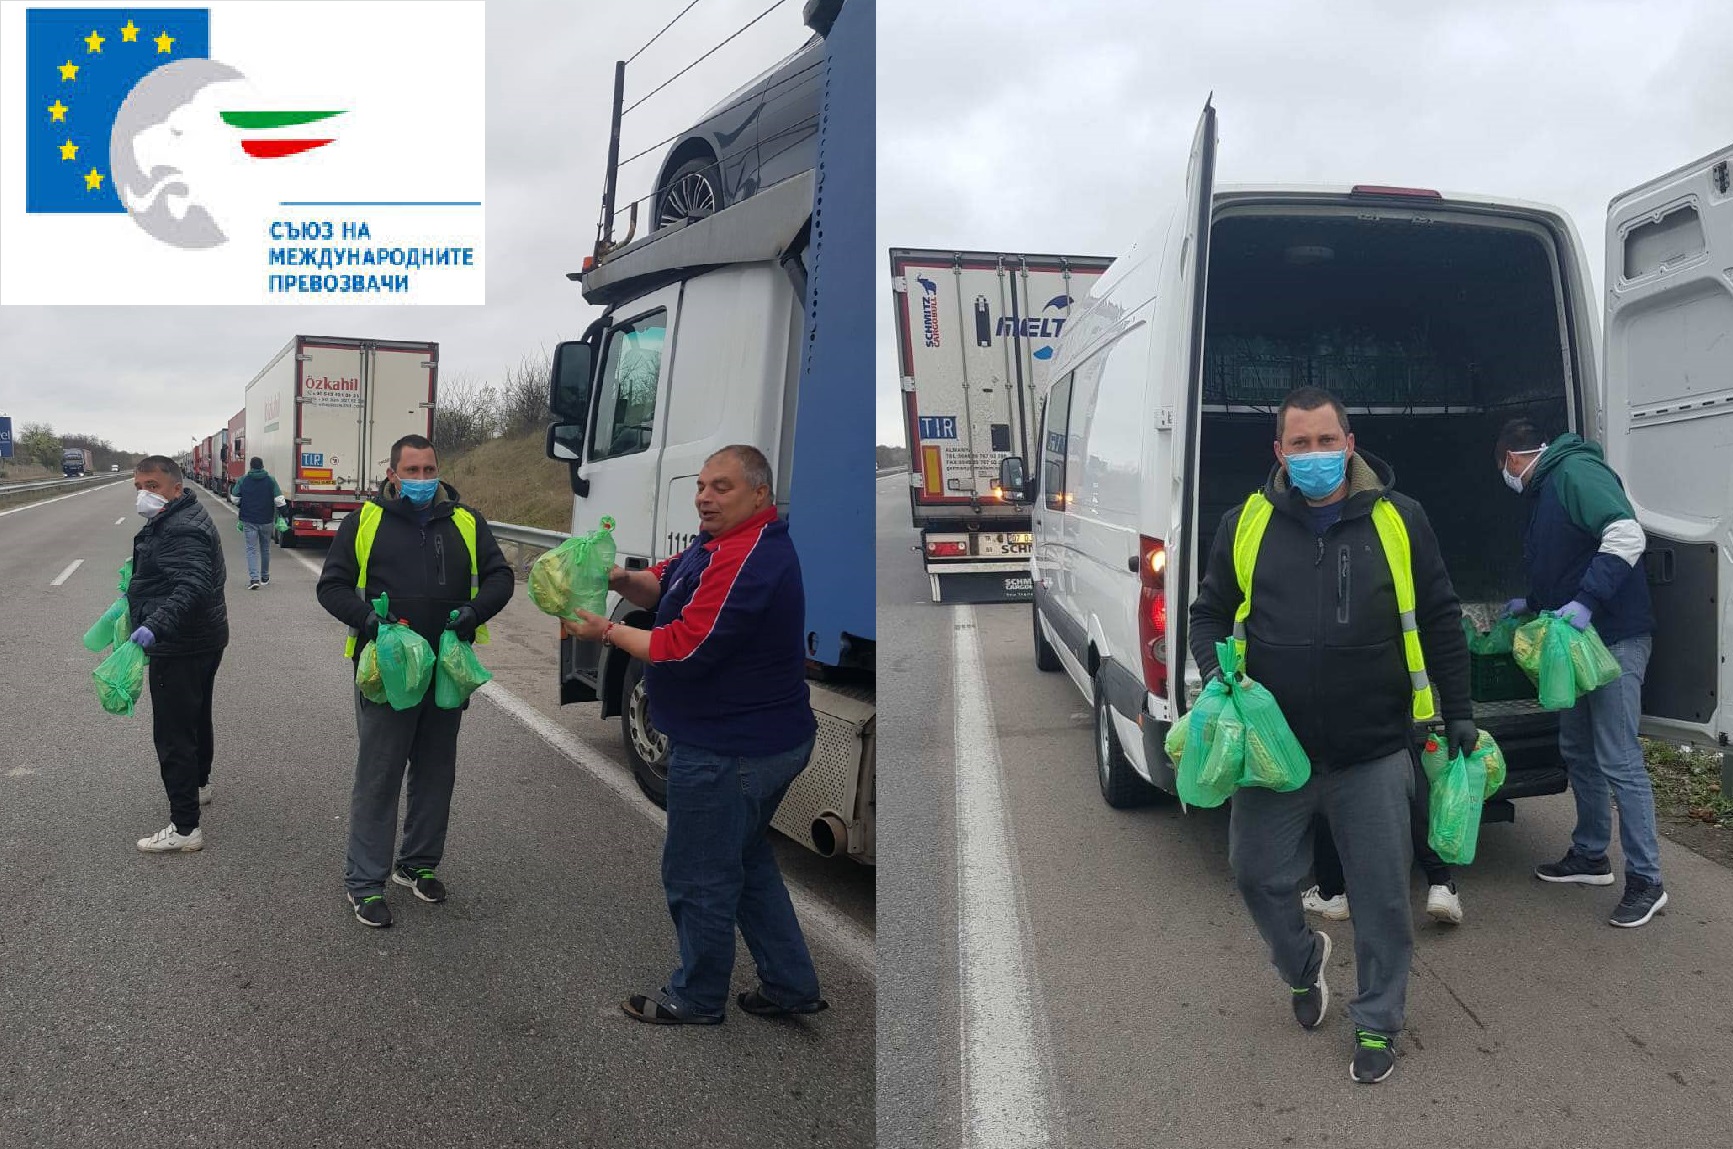 Bulgaristan Partner Dernek SMP Sınır Kapısındaki Sürücülere Kumanya Dağıtımında Bulundu